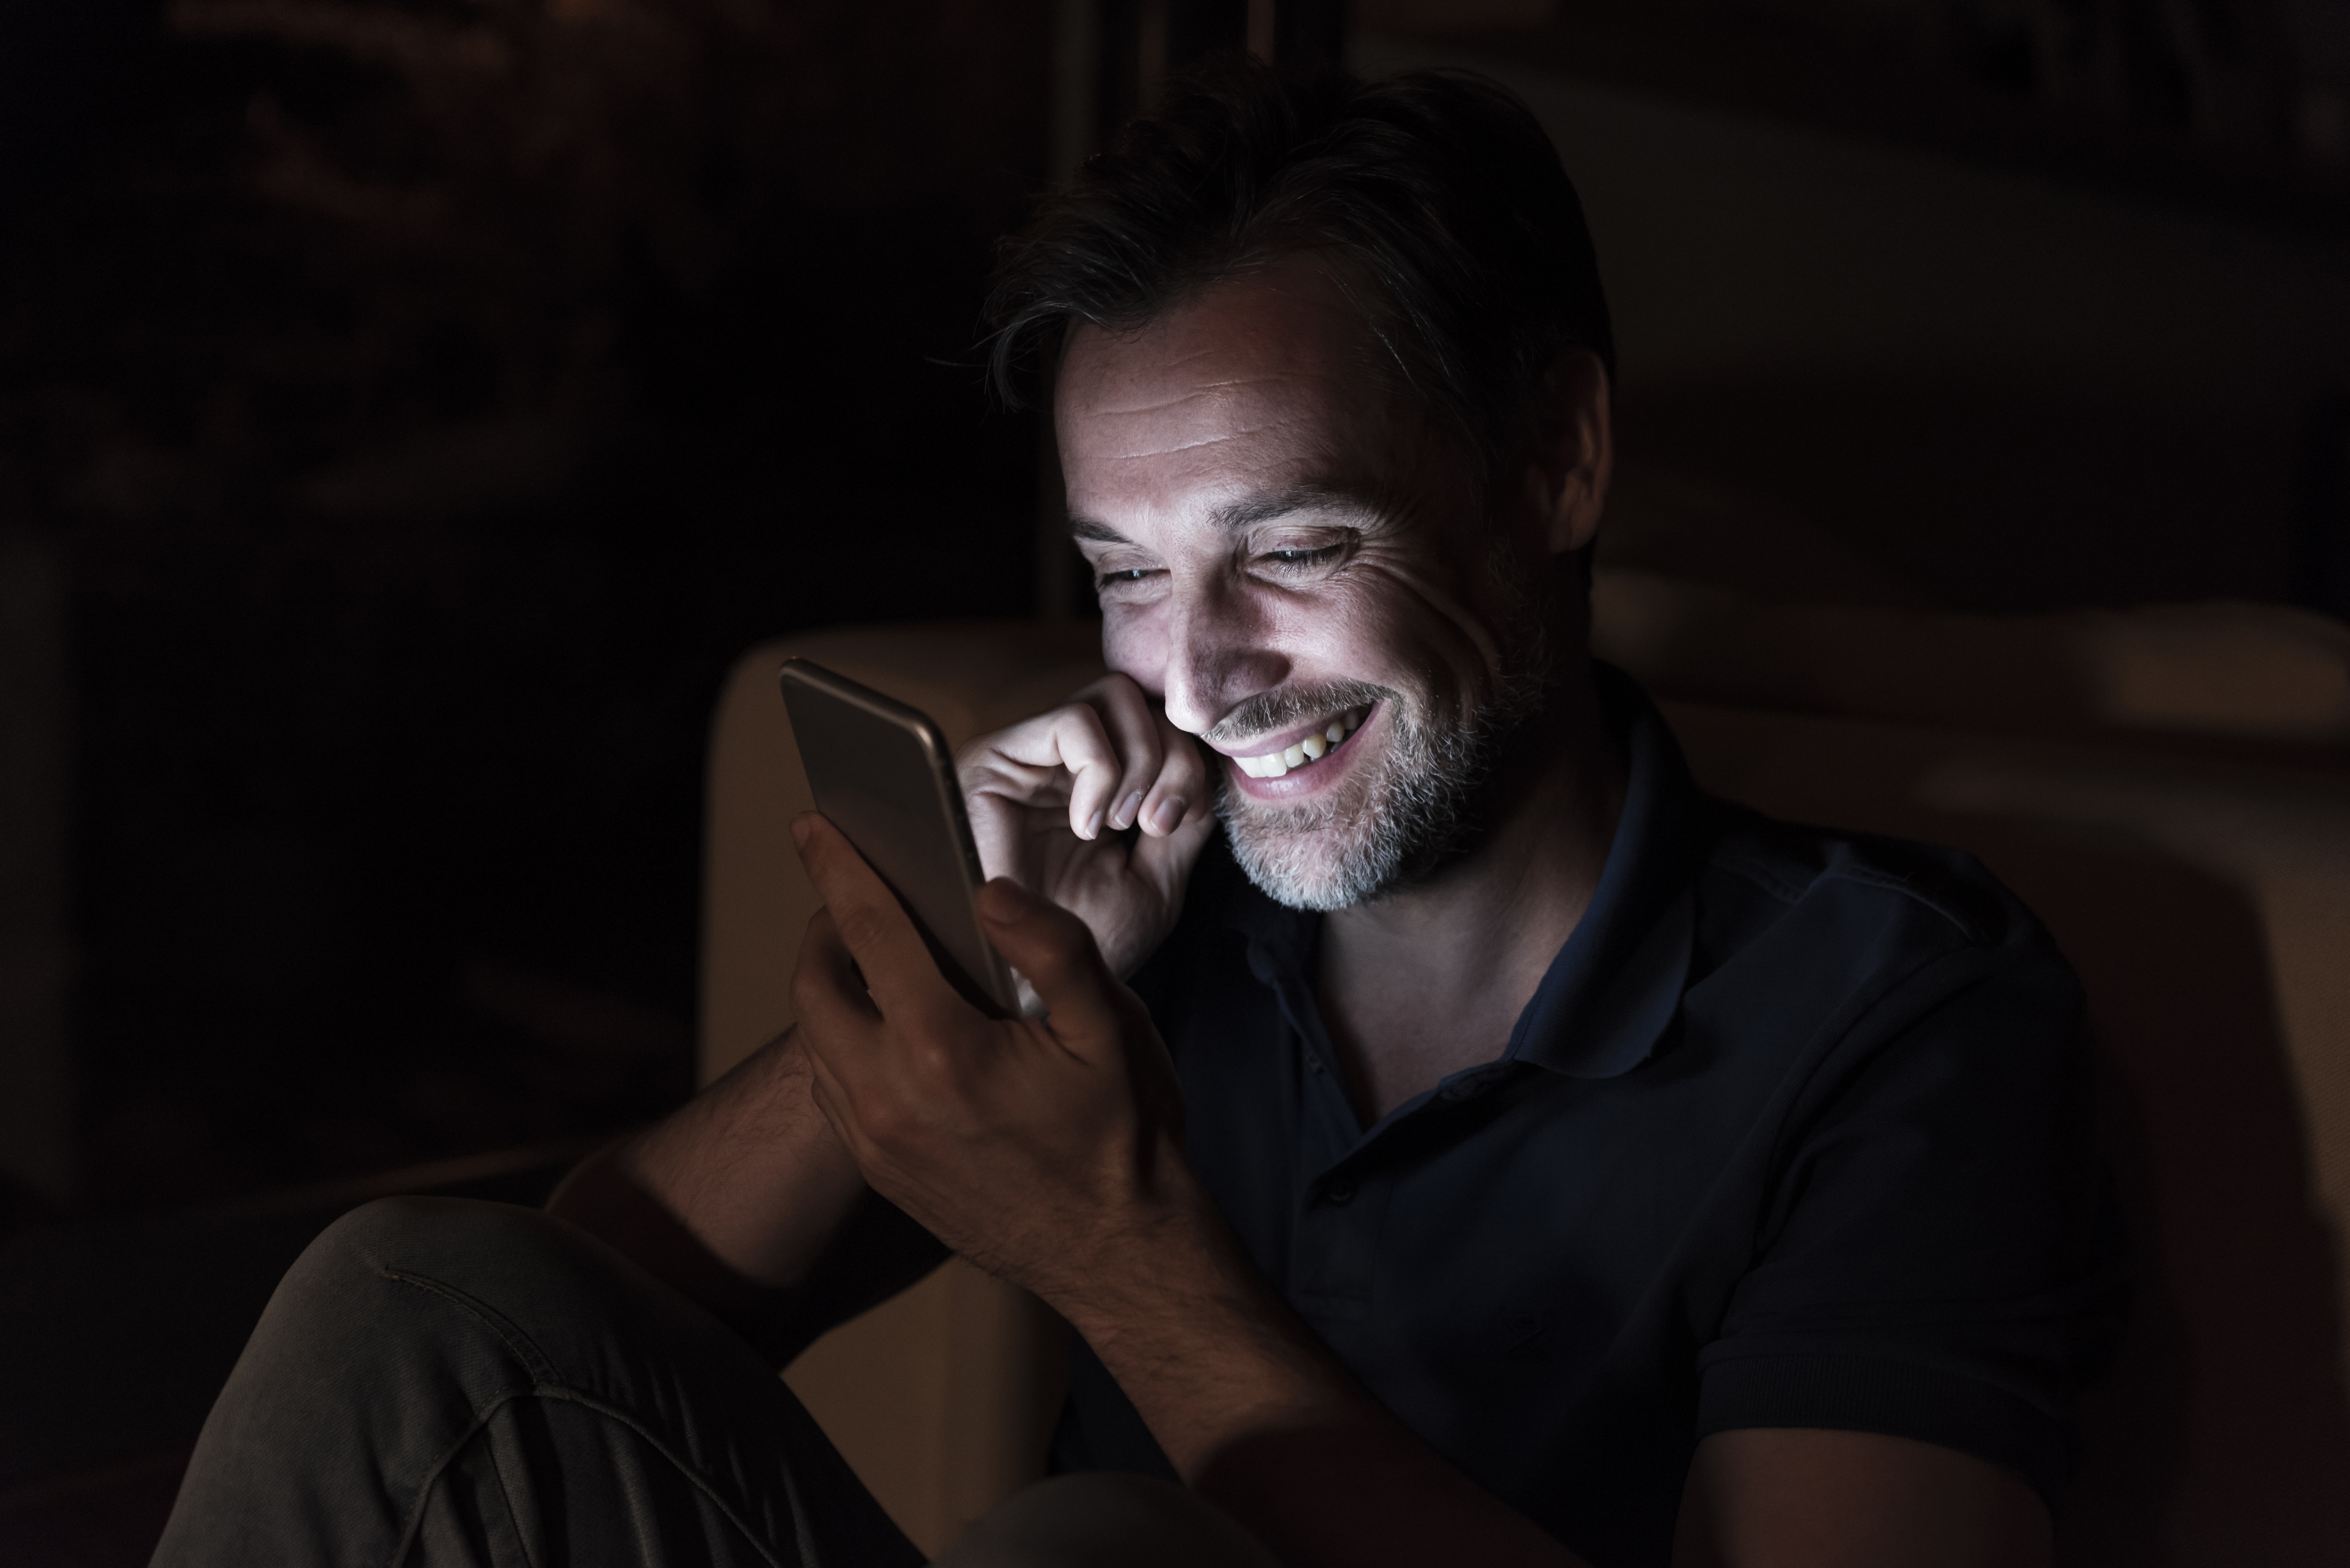 Mann lachend beim SMS schreiben | Quelle: Getty Images